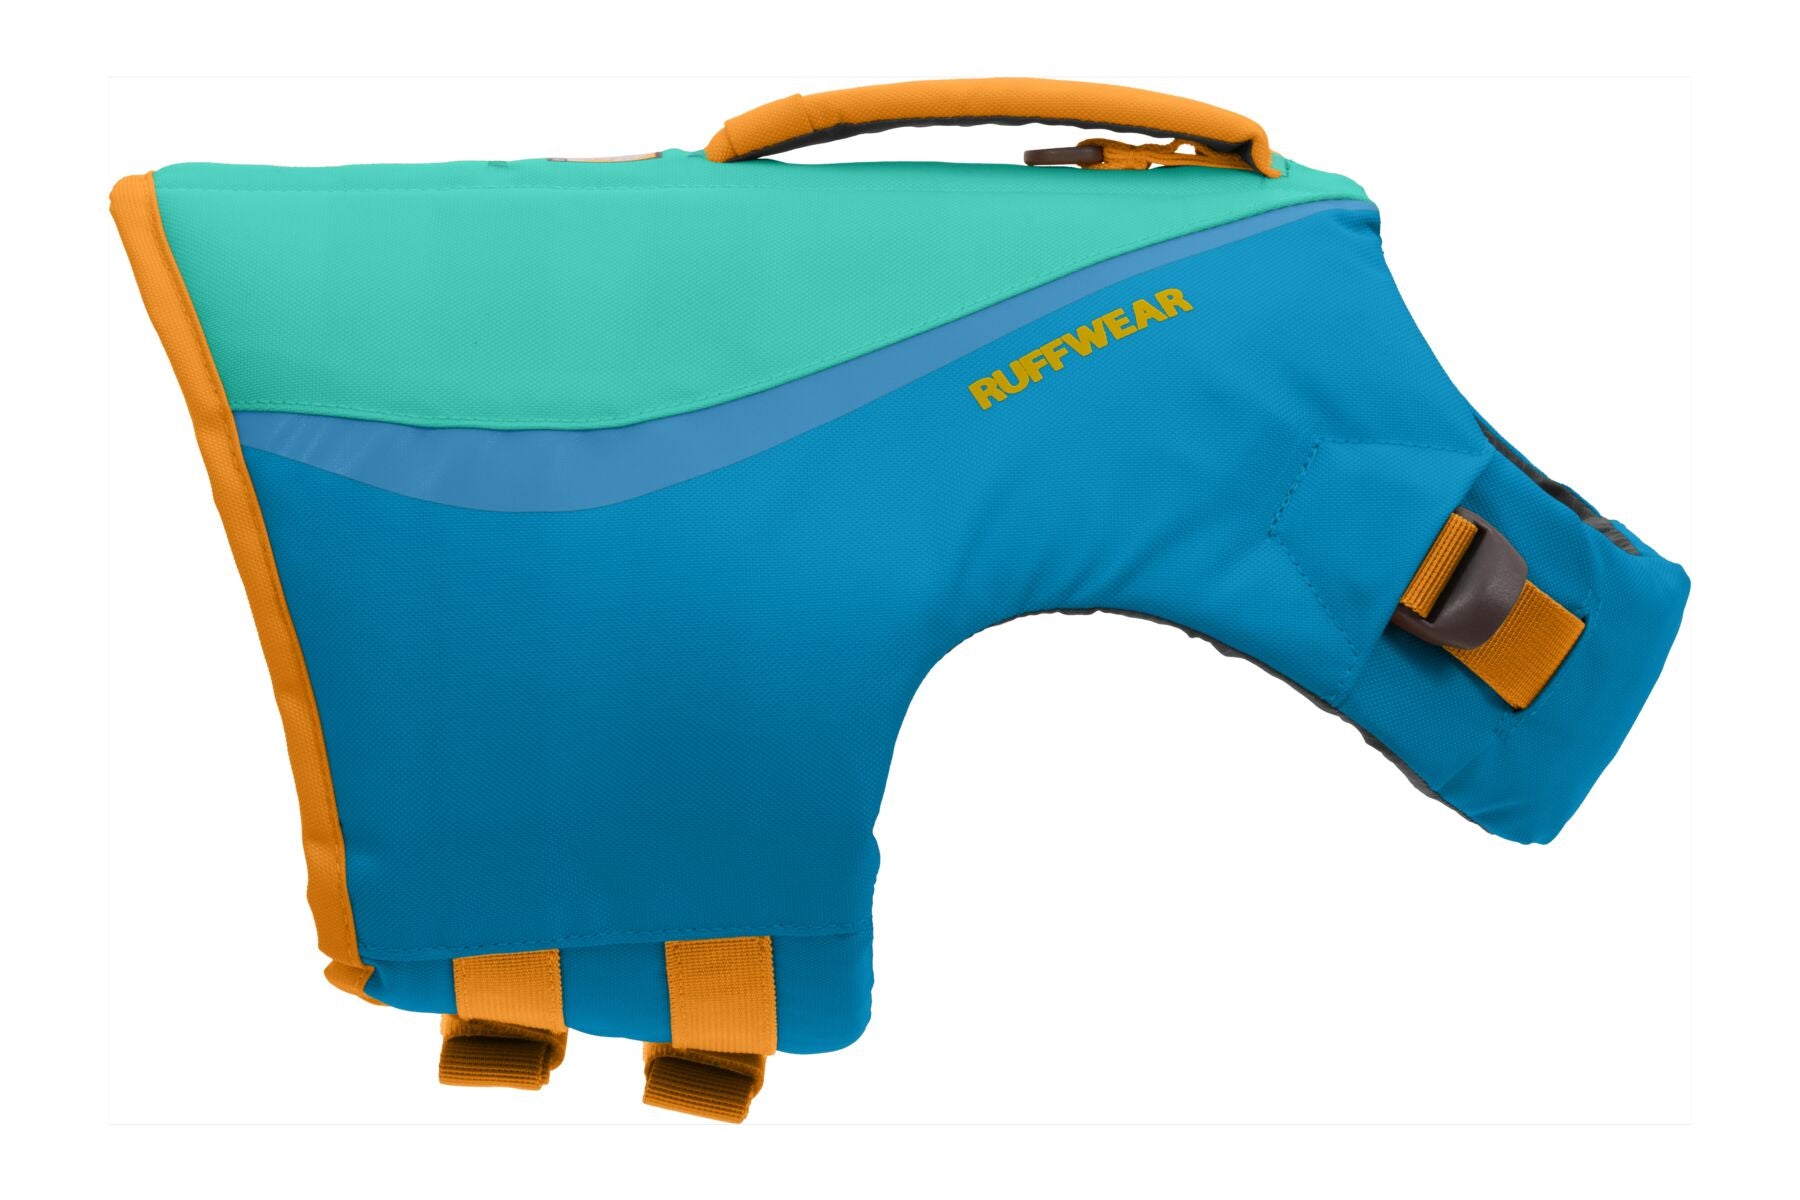 Chaleco Salvavidas para Perros Azul (Blue Dusk) - K-9 Float Coat de Ruffwear®